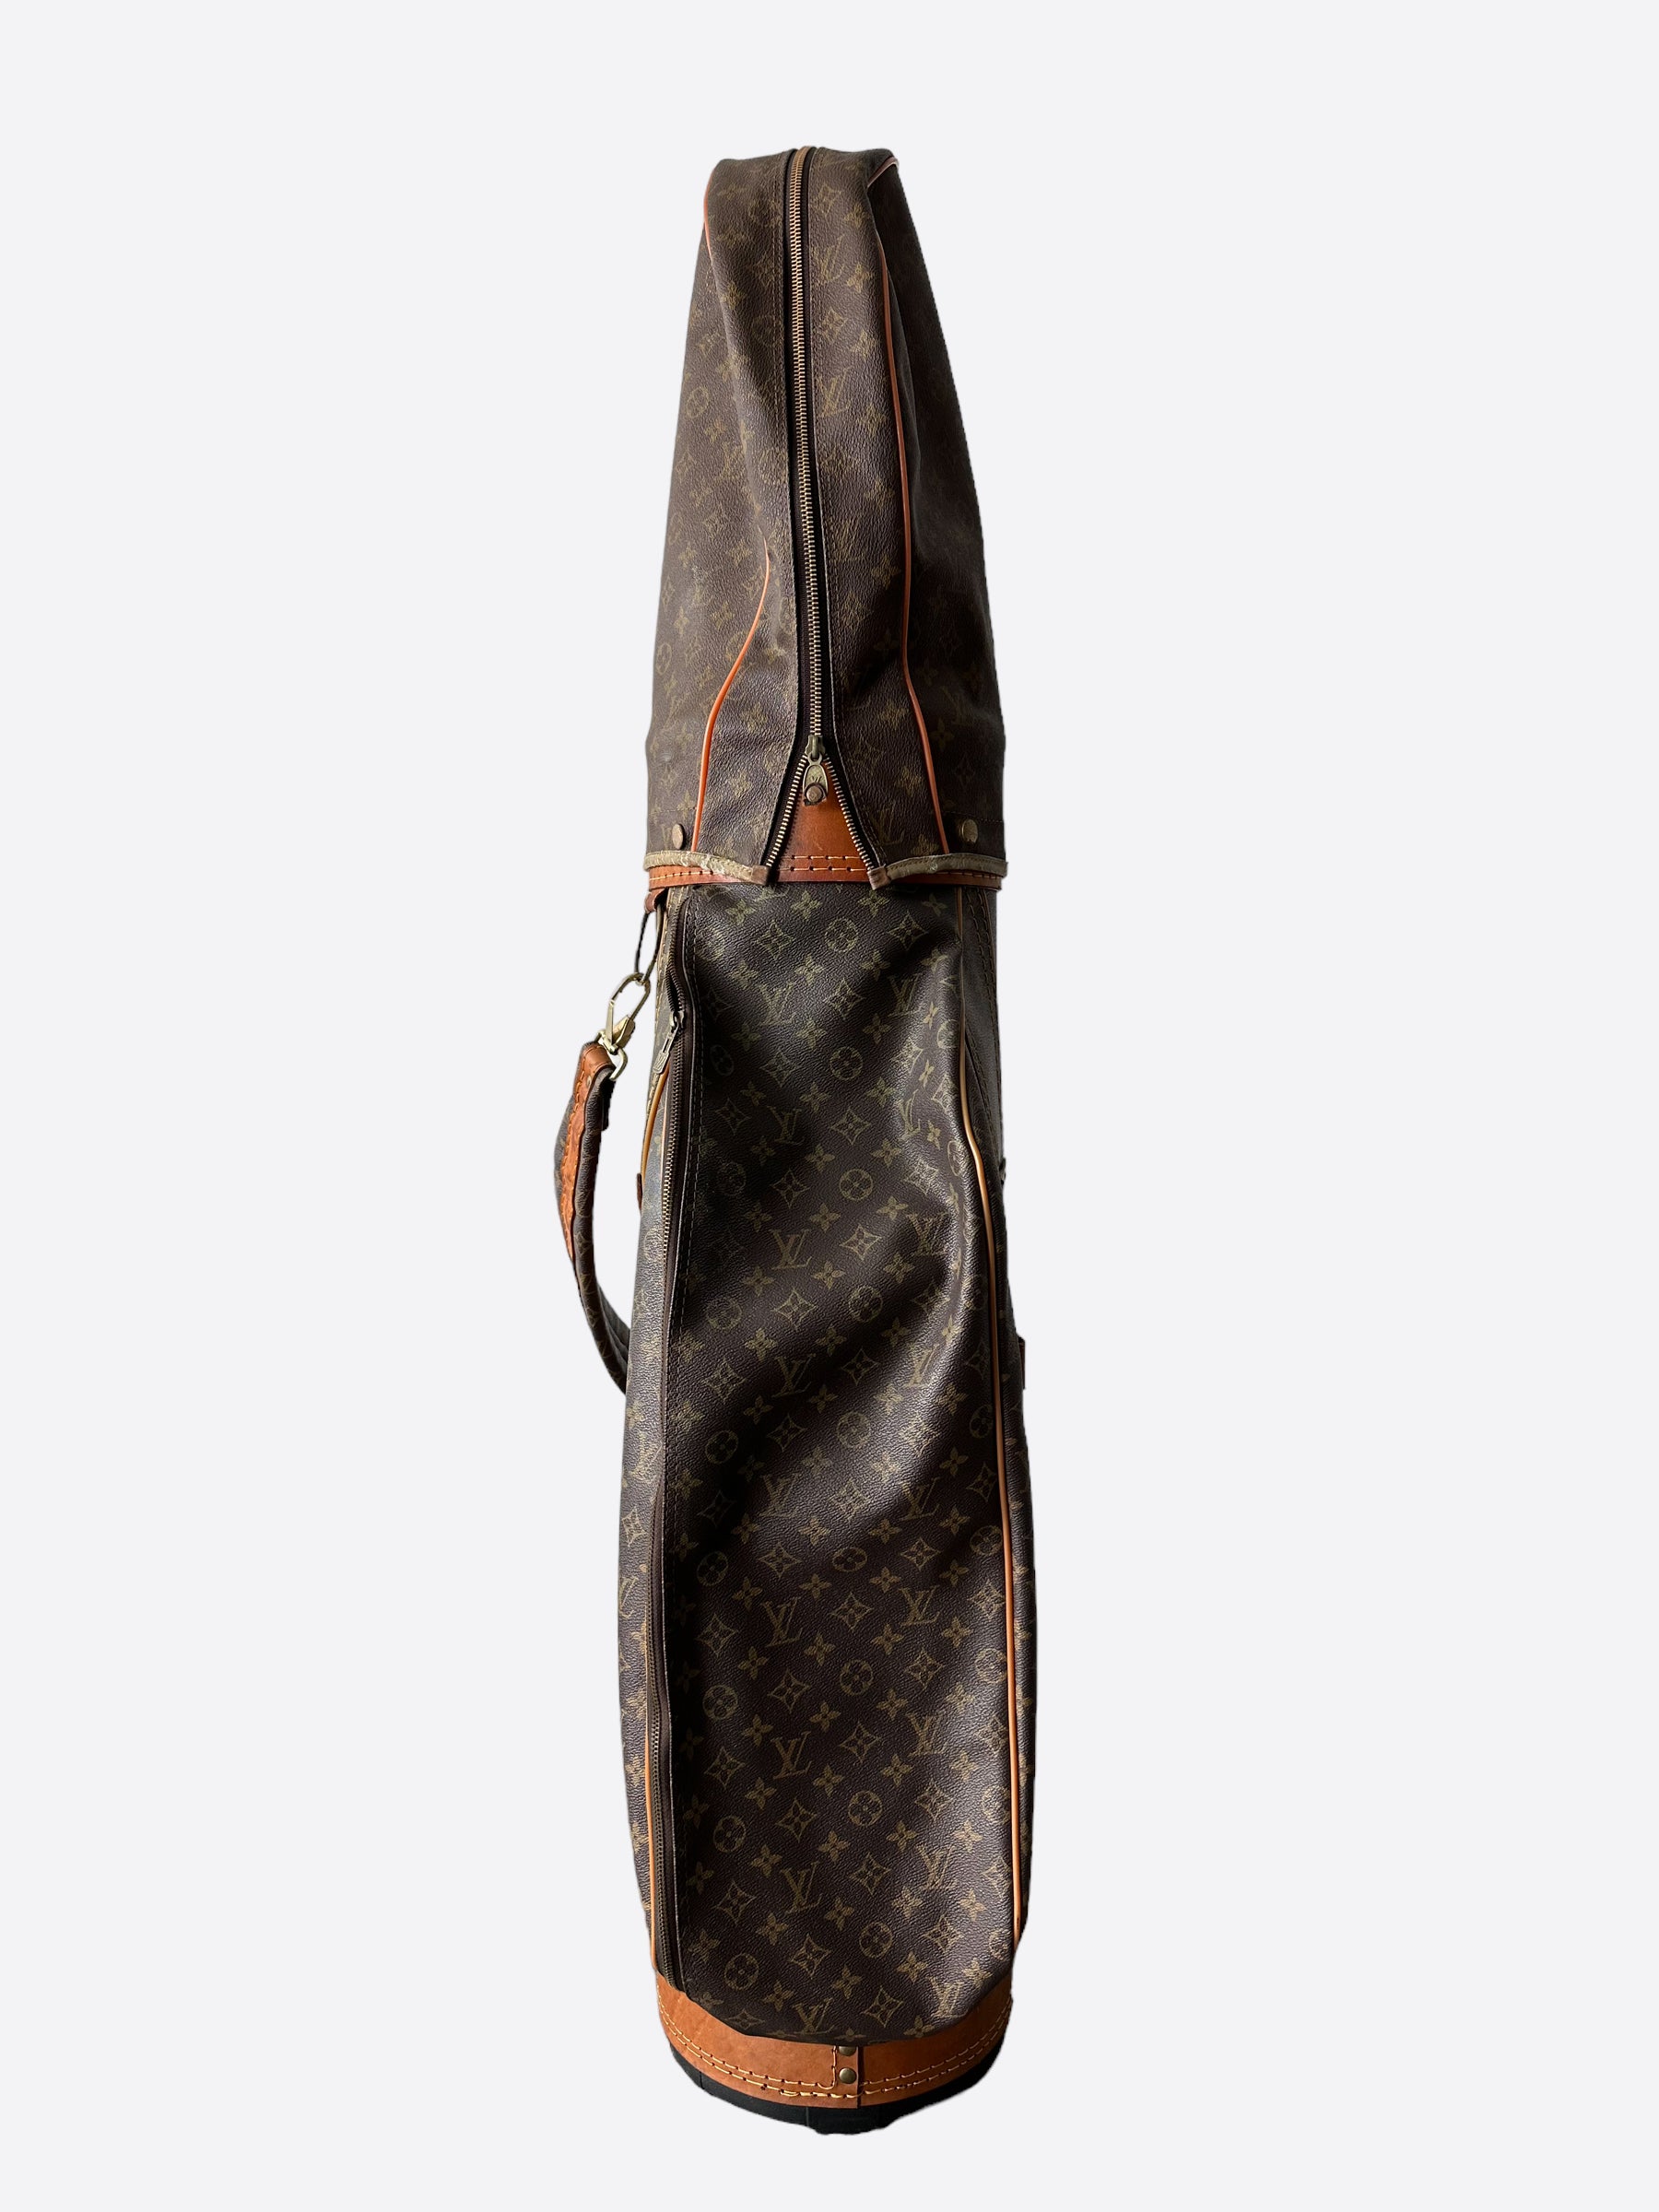 Louis Vuitton Bag Vintage 